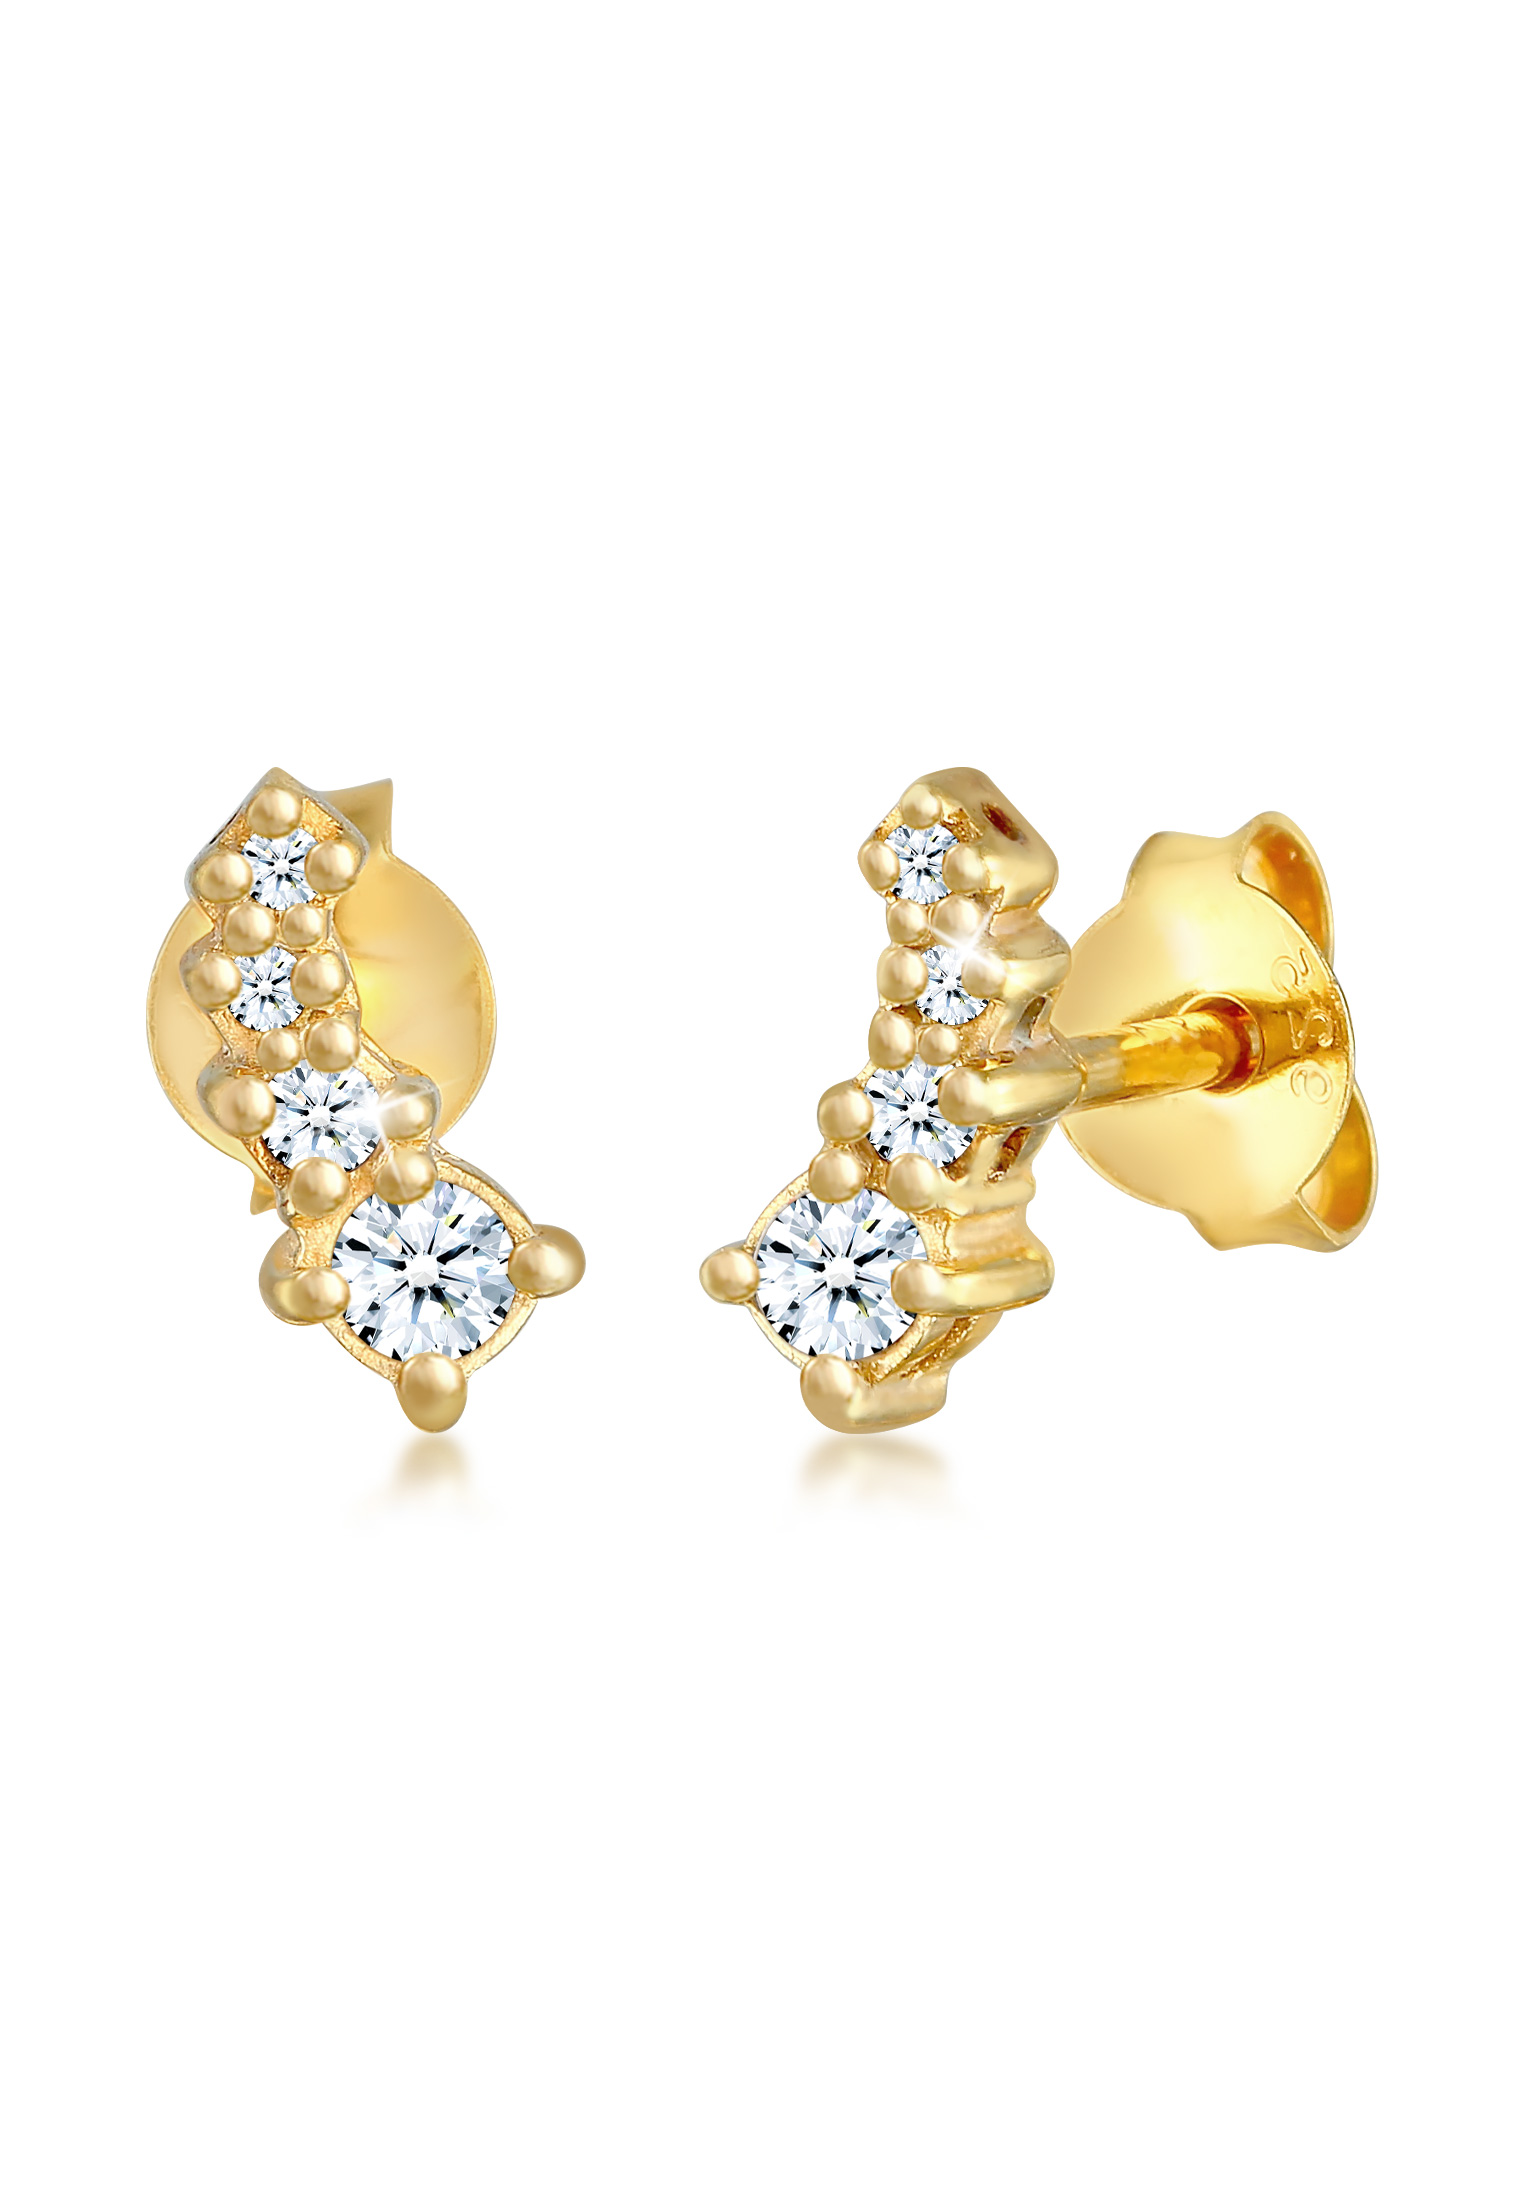 Elli Jewelry 耳環優雅閃閃發光的鑽石鍍金